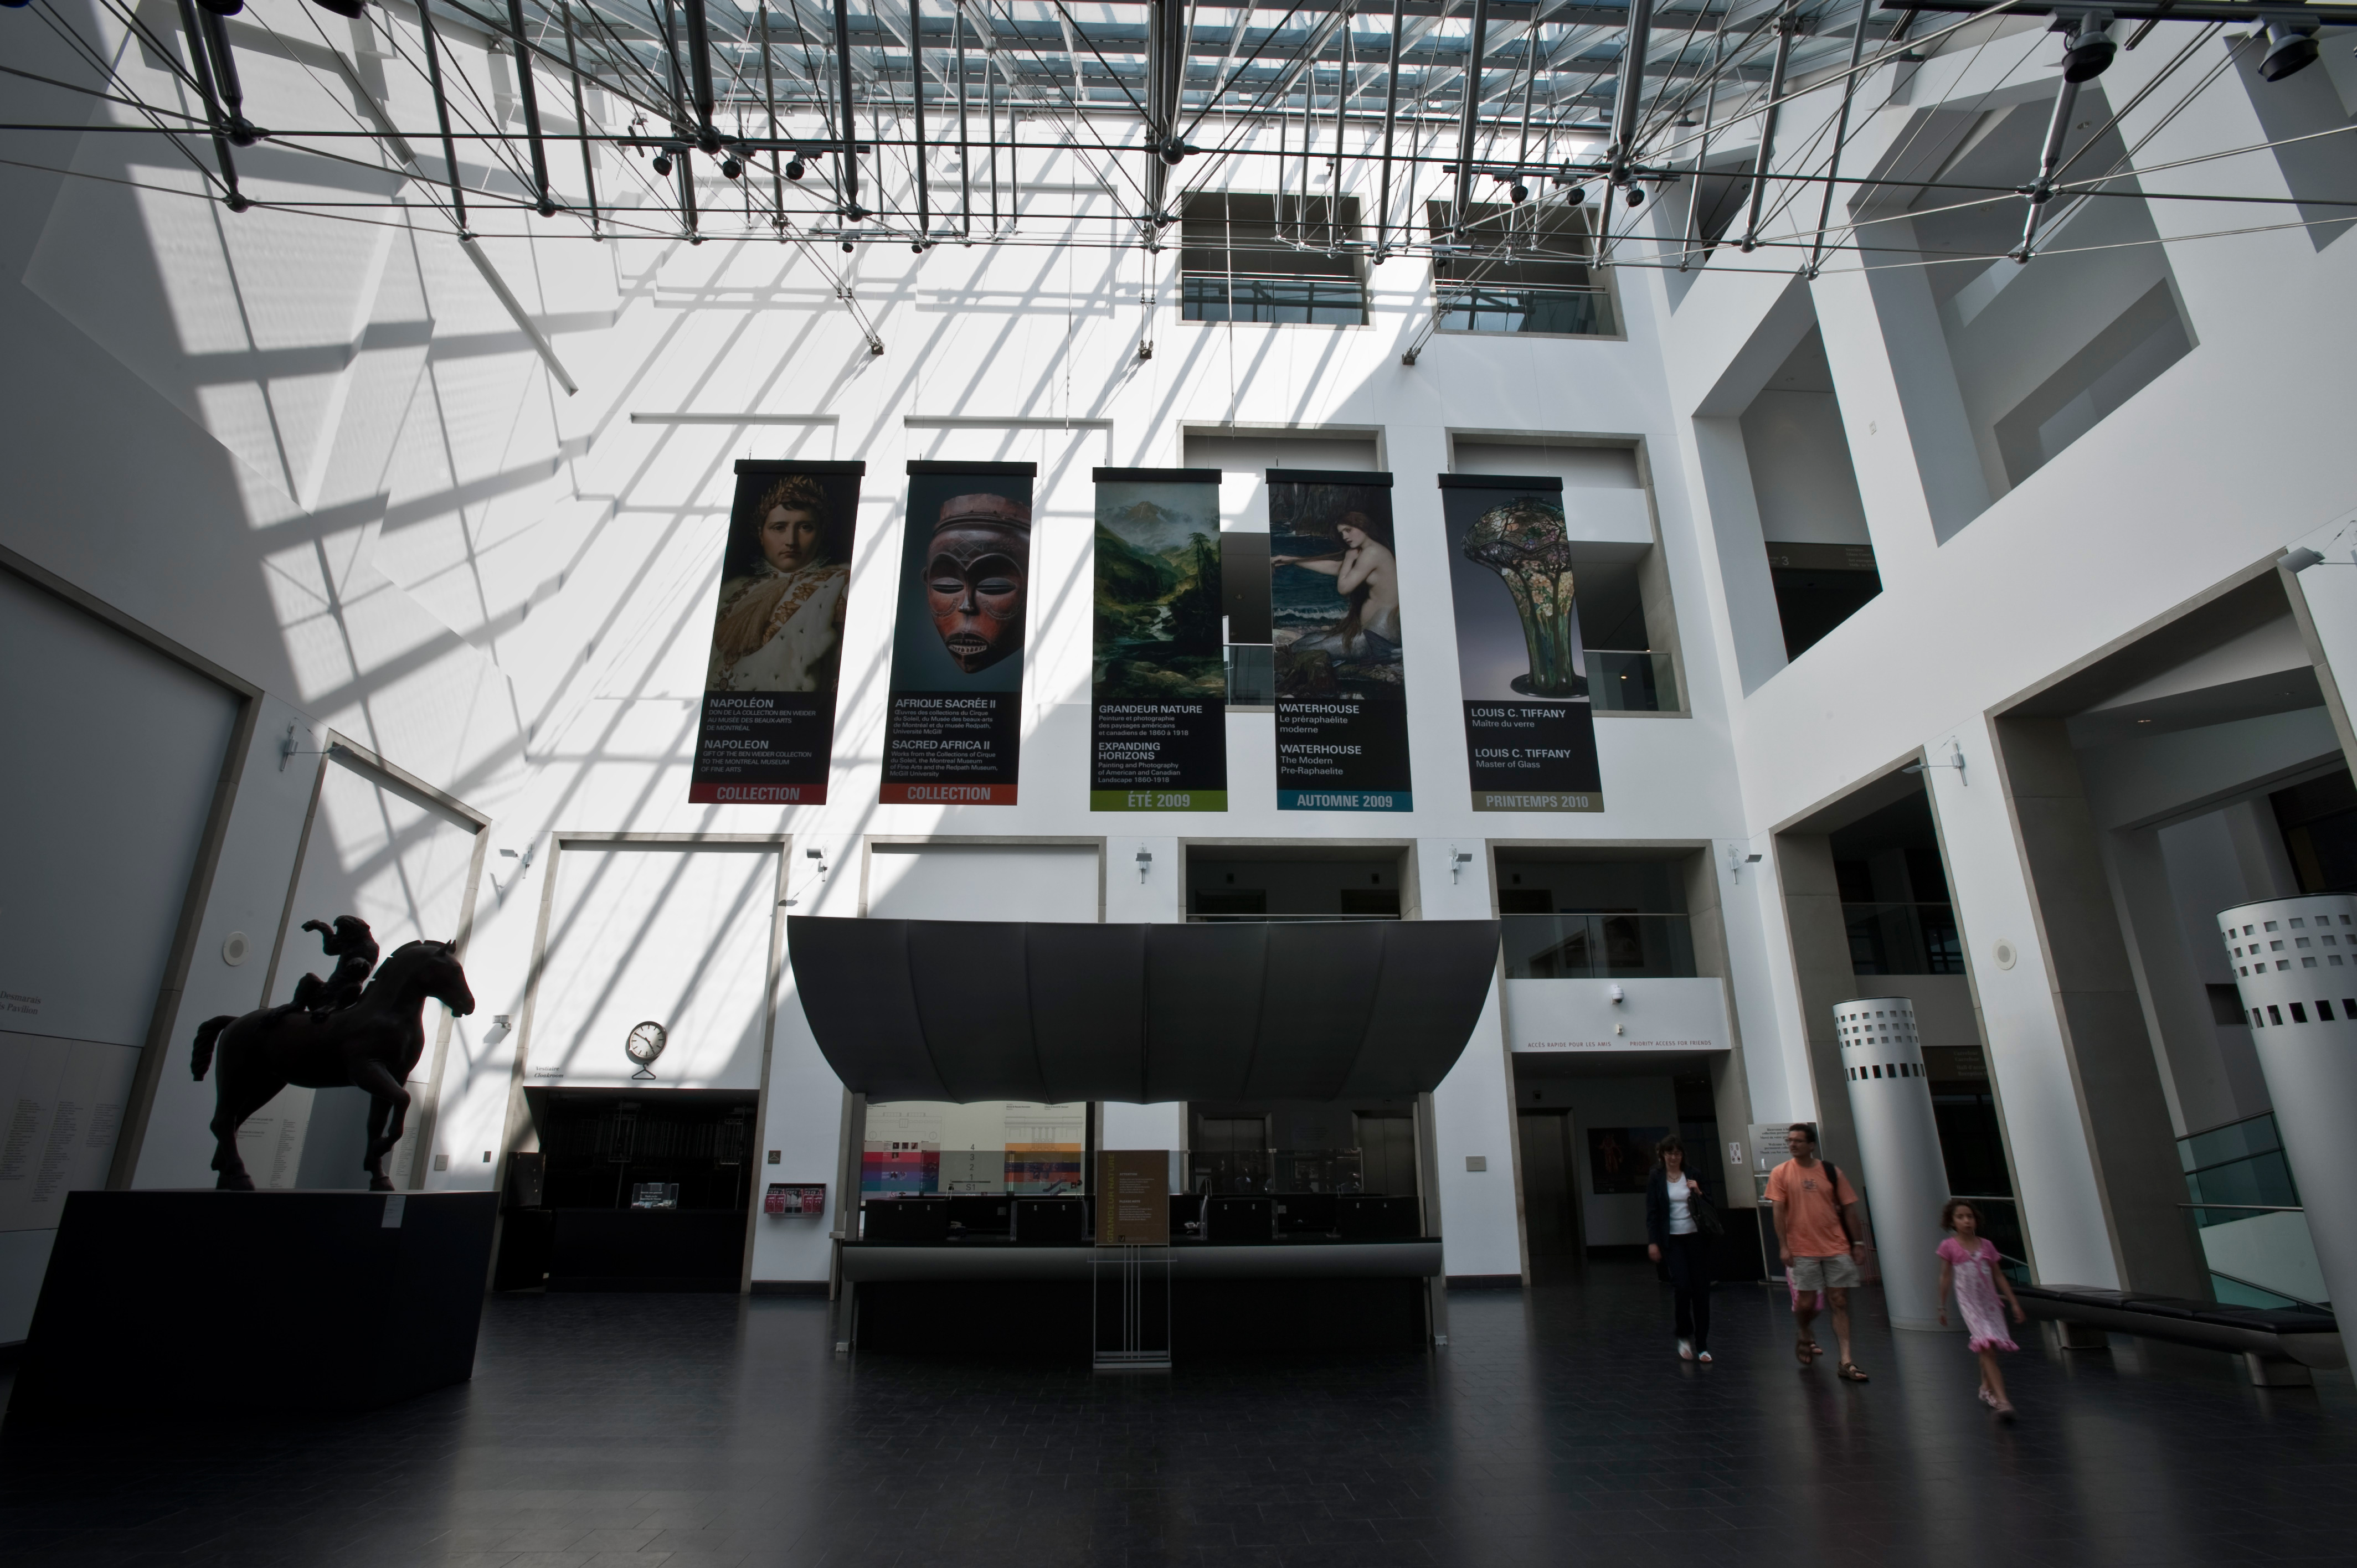 Inside the Musée des Beaux-Arts de Montréal. Image by Guylain Doyle / Getty